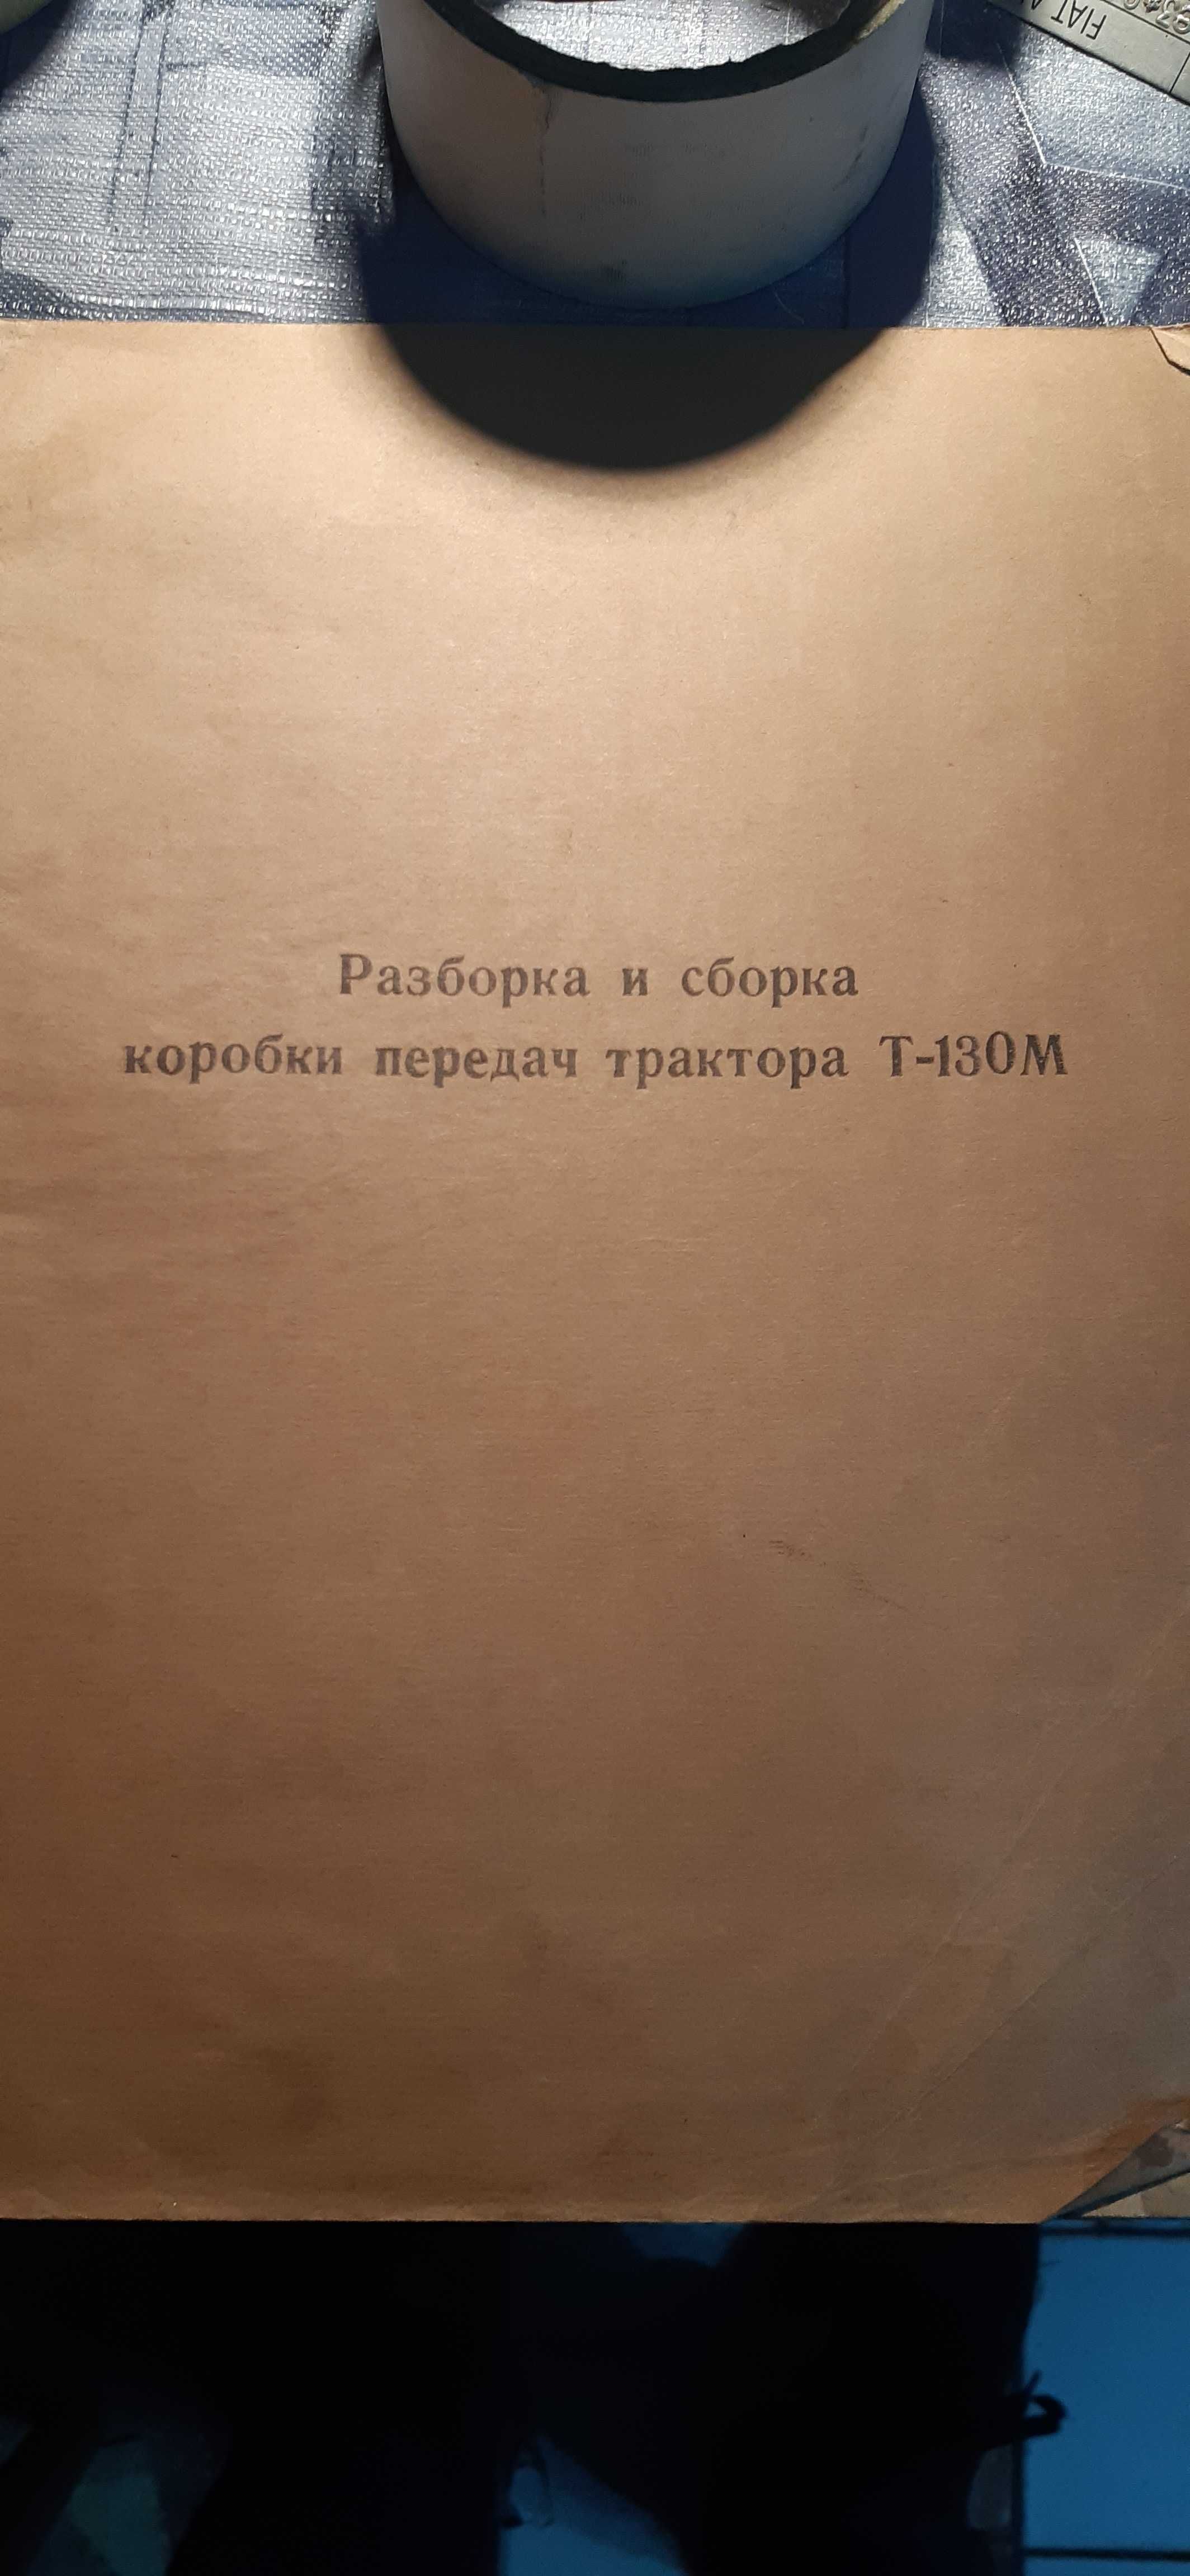 stara rosyjska instrukcja do traktora T-130M dla kolekcjonerów